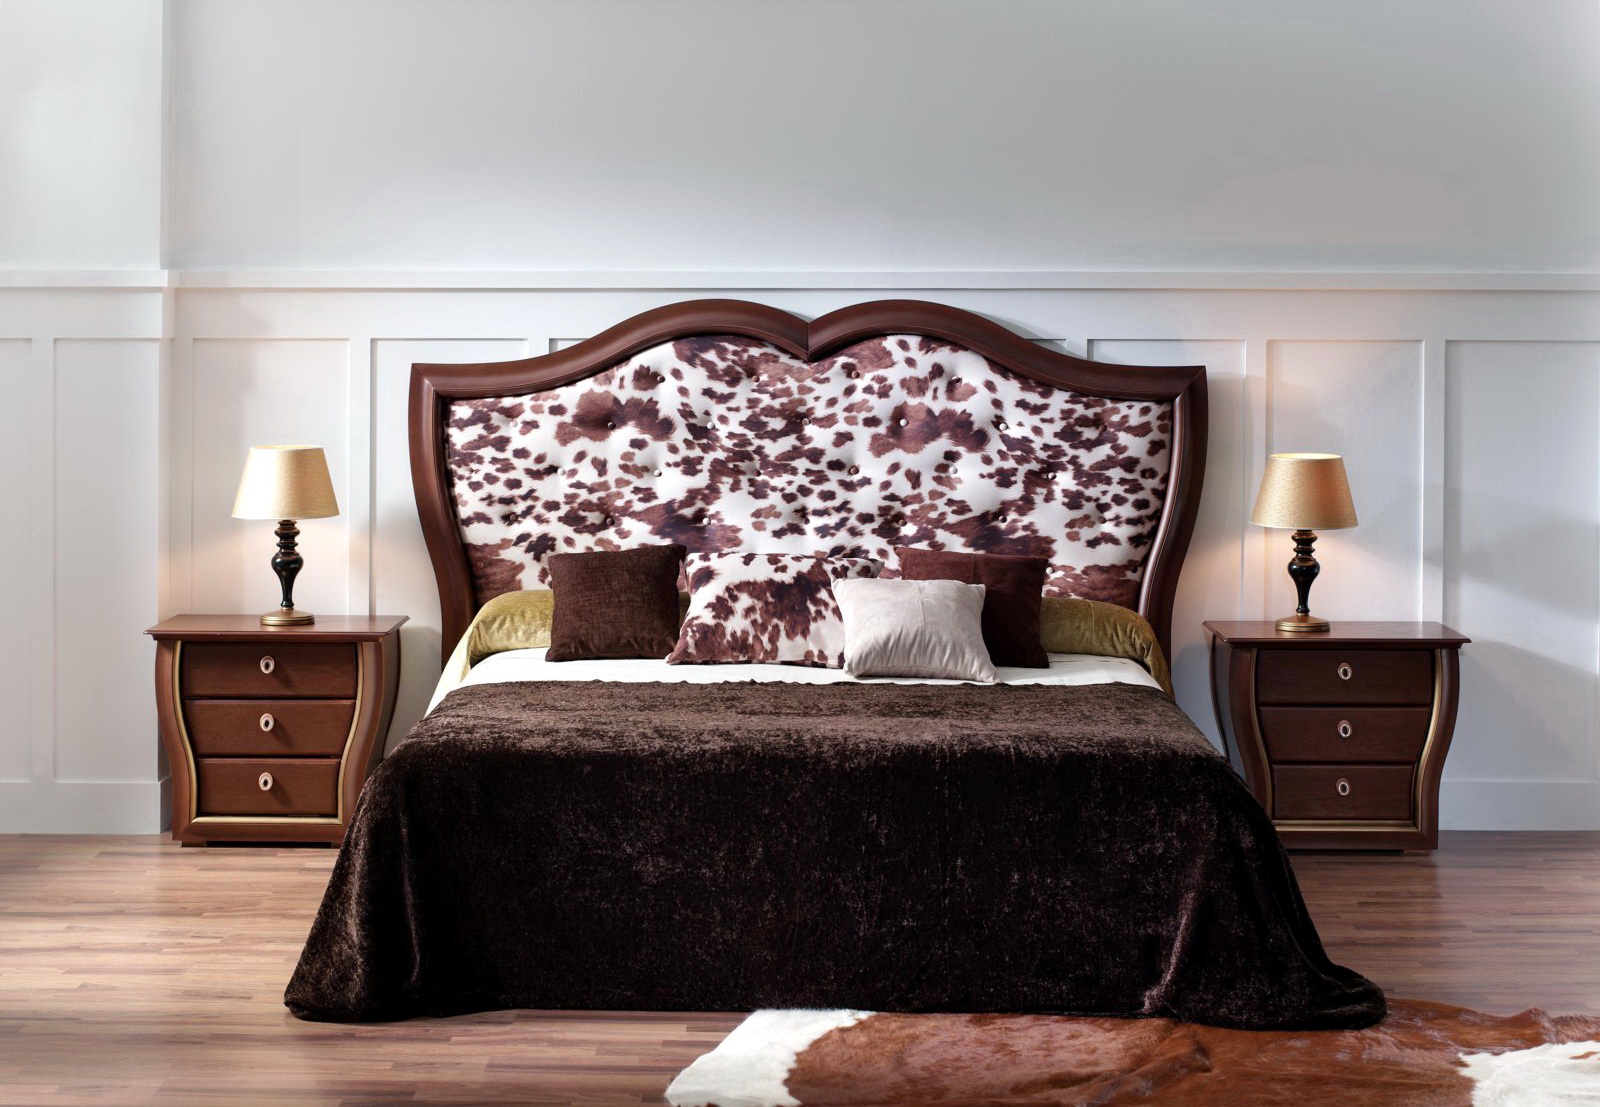 Dormitorio cama tapizada Zache 0026 by Zache Diseño Anzadi Mobiliario en muebles antoñán® León